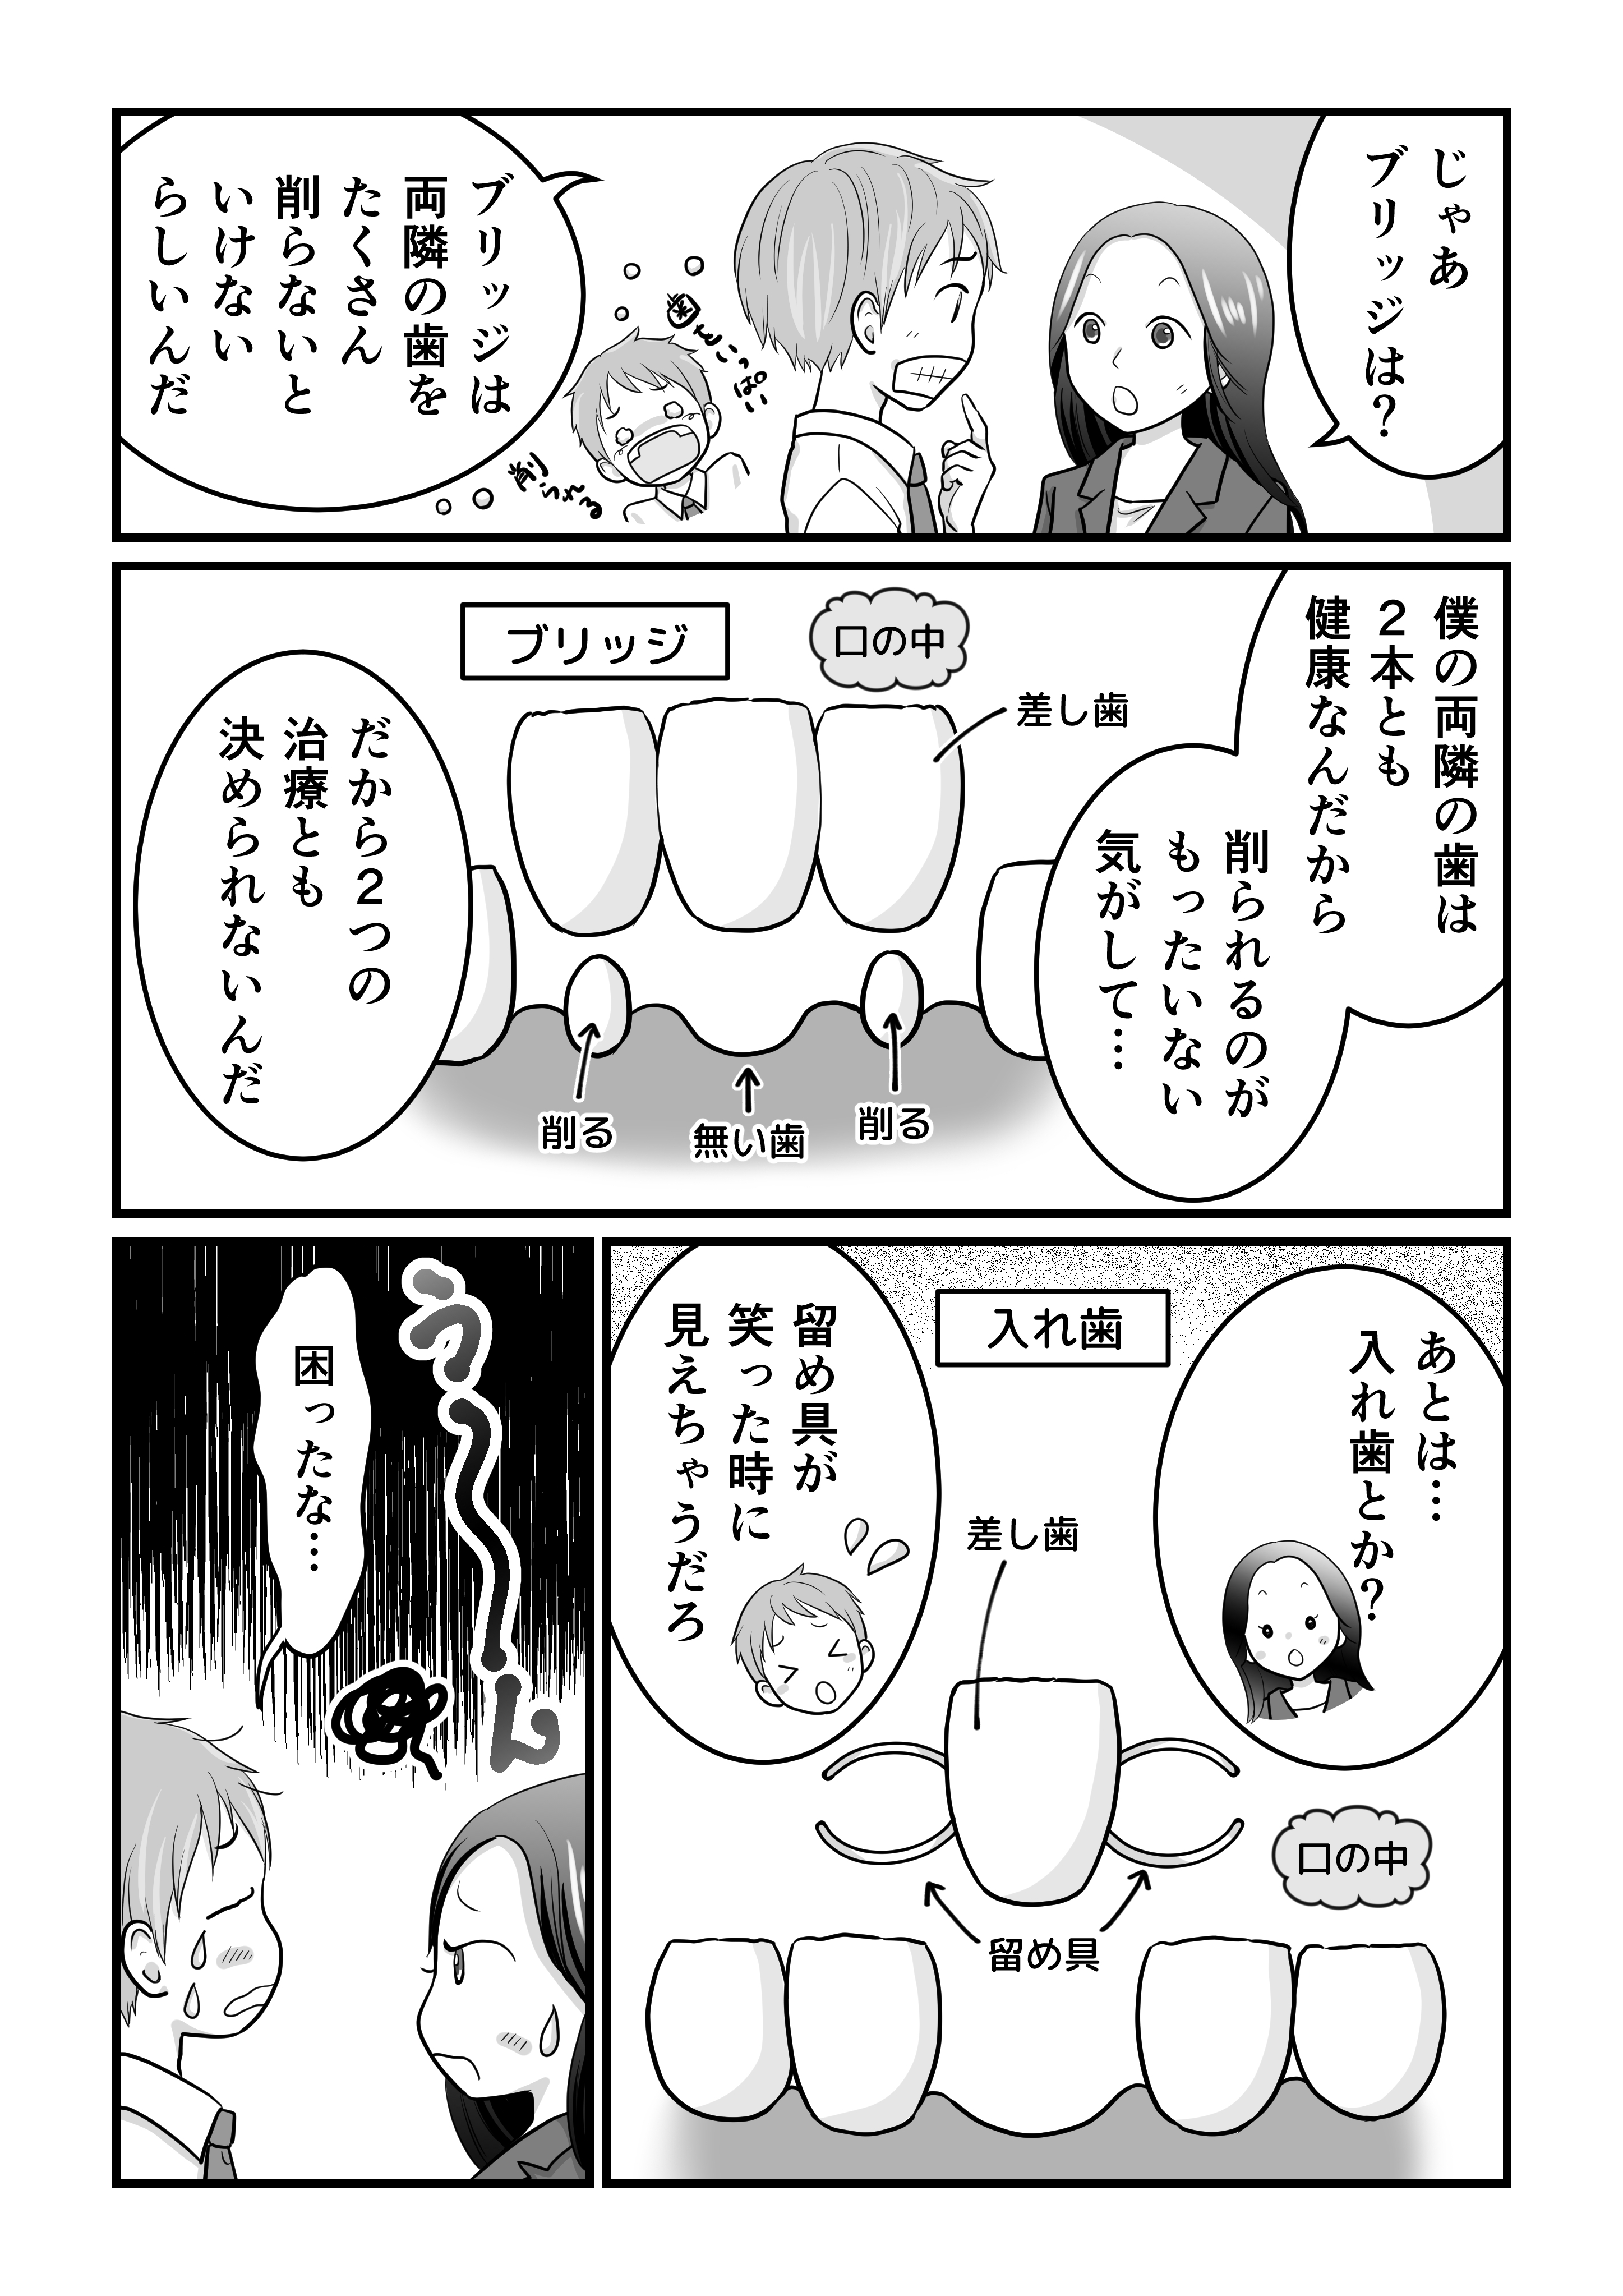 田島様歯科漫画（確認用低画質）_002